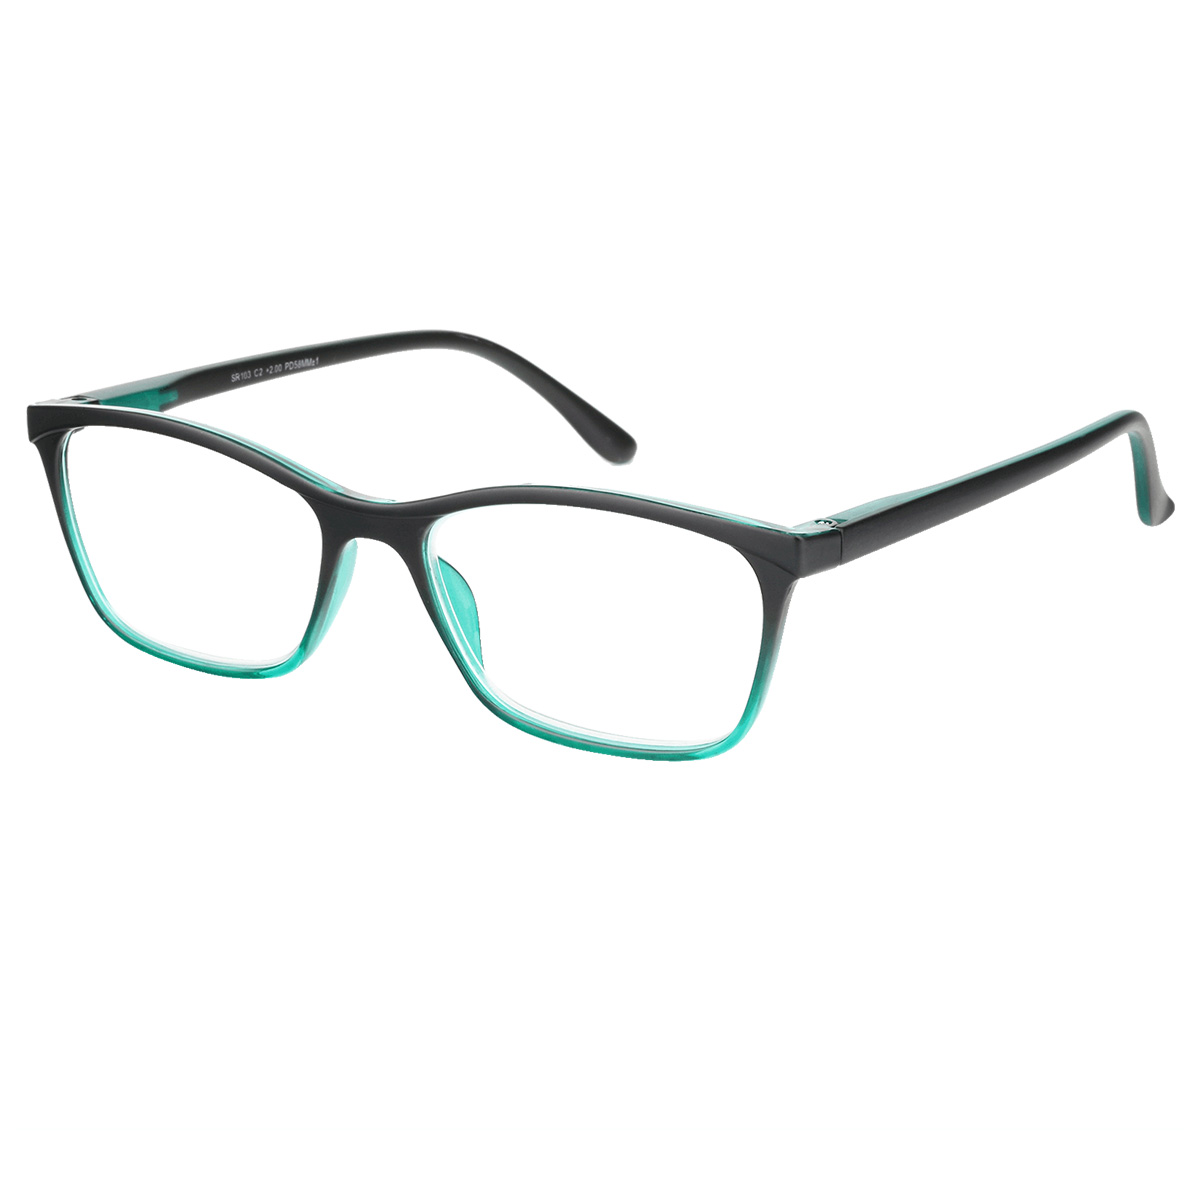 Dai - Rectangle Green-Black Reading Glasses for Men & Women